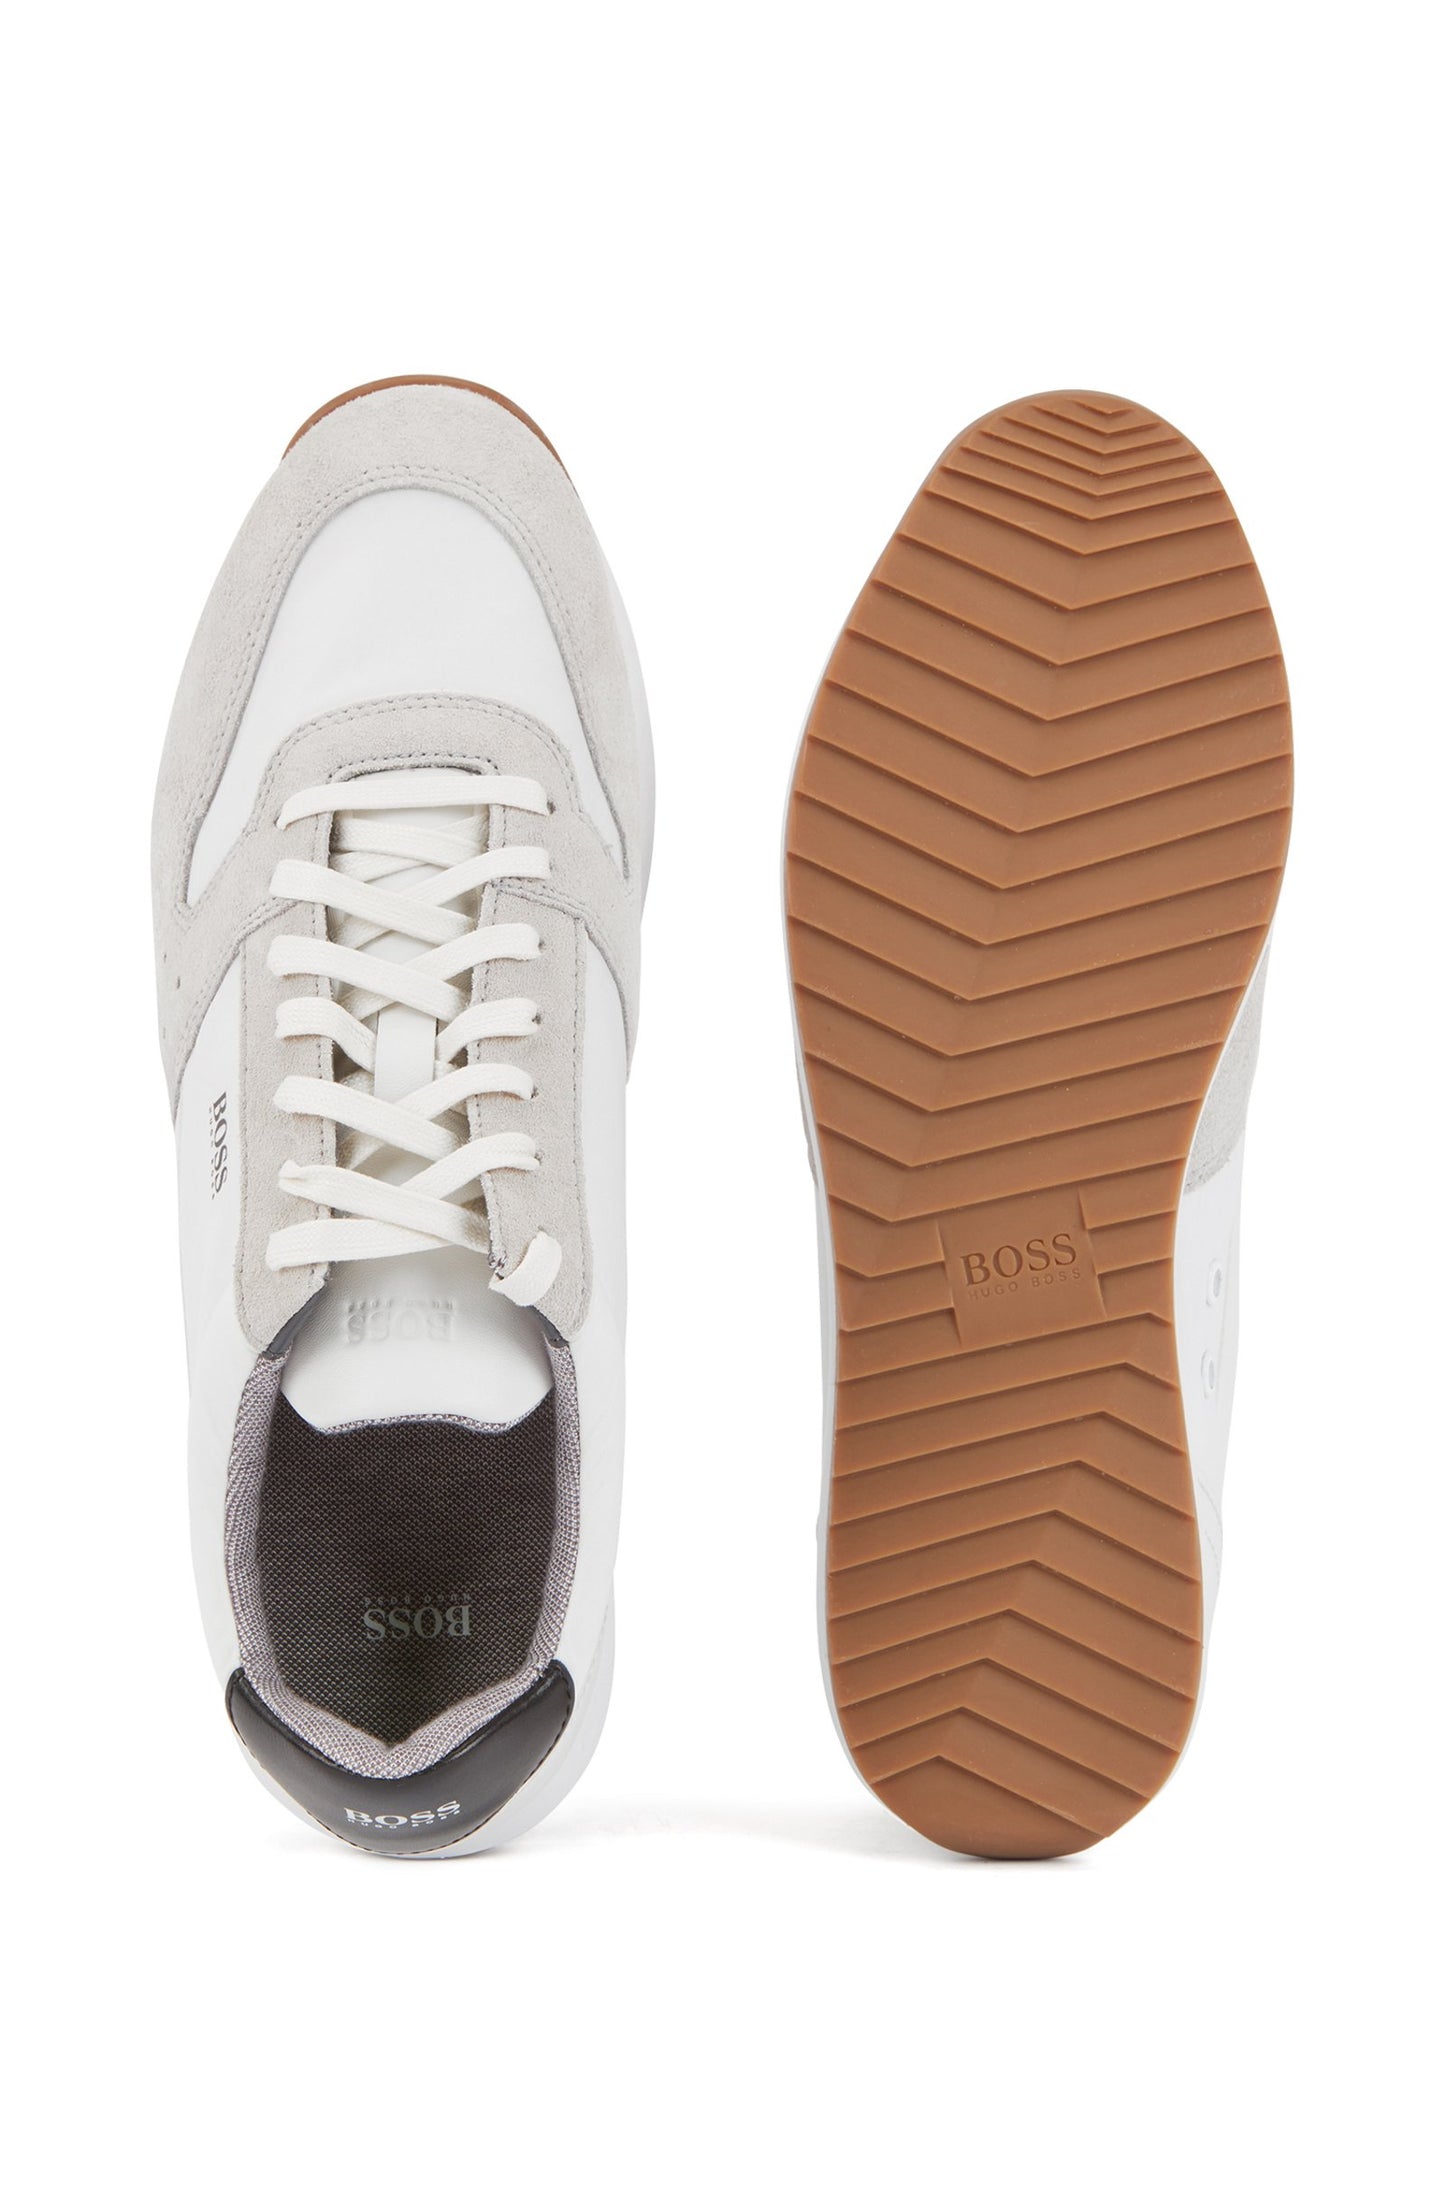 Hugo Boss footwear 50401854-100 Sonic runn tech white